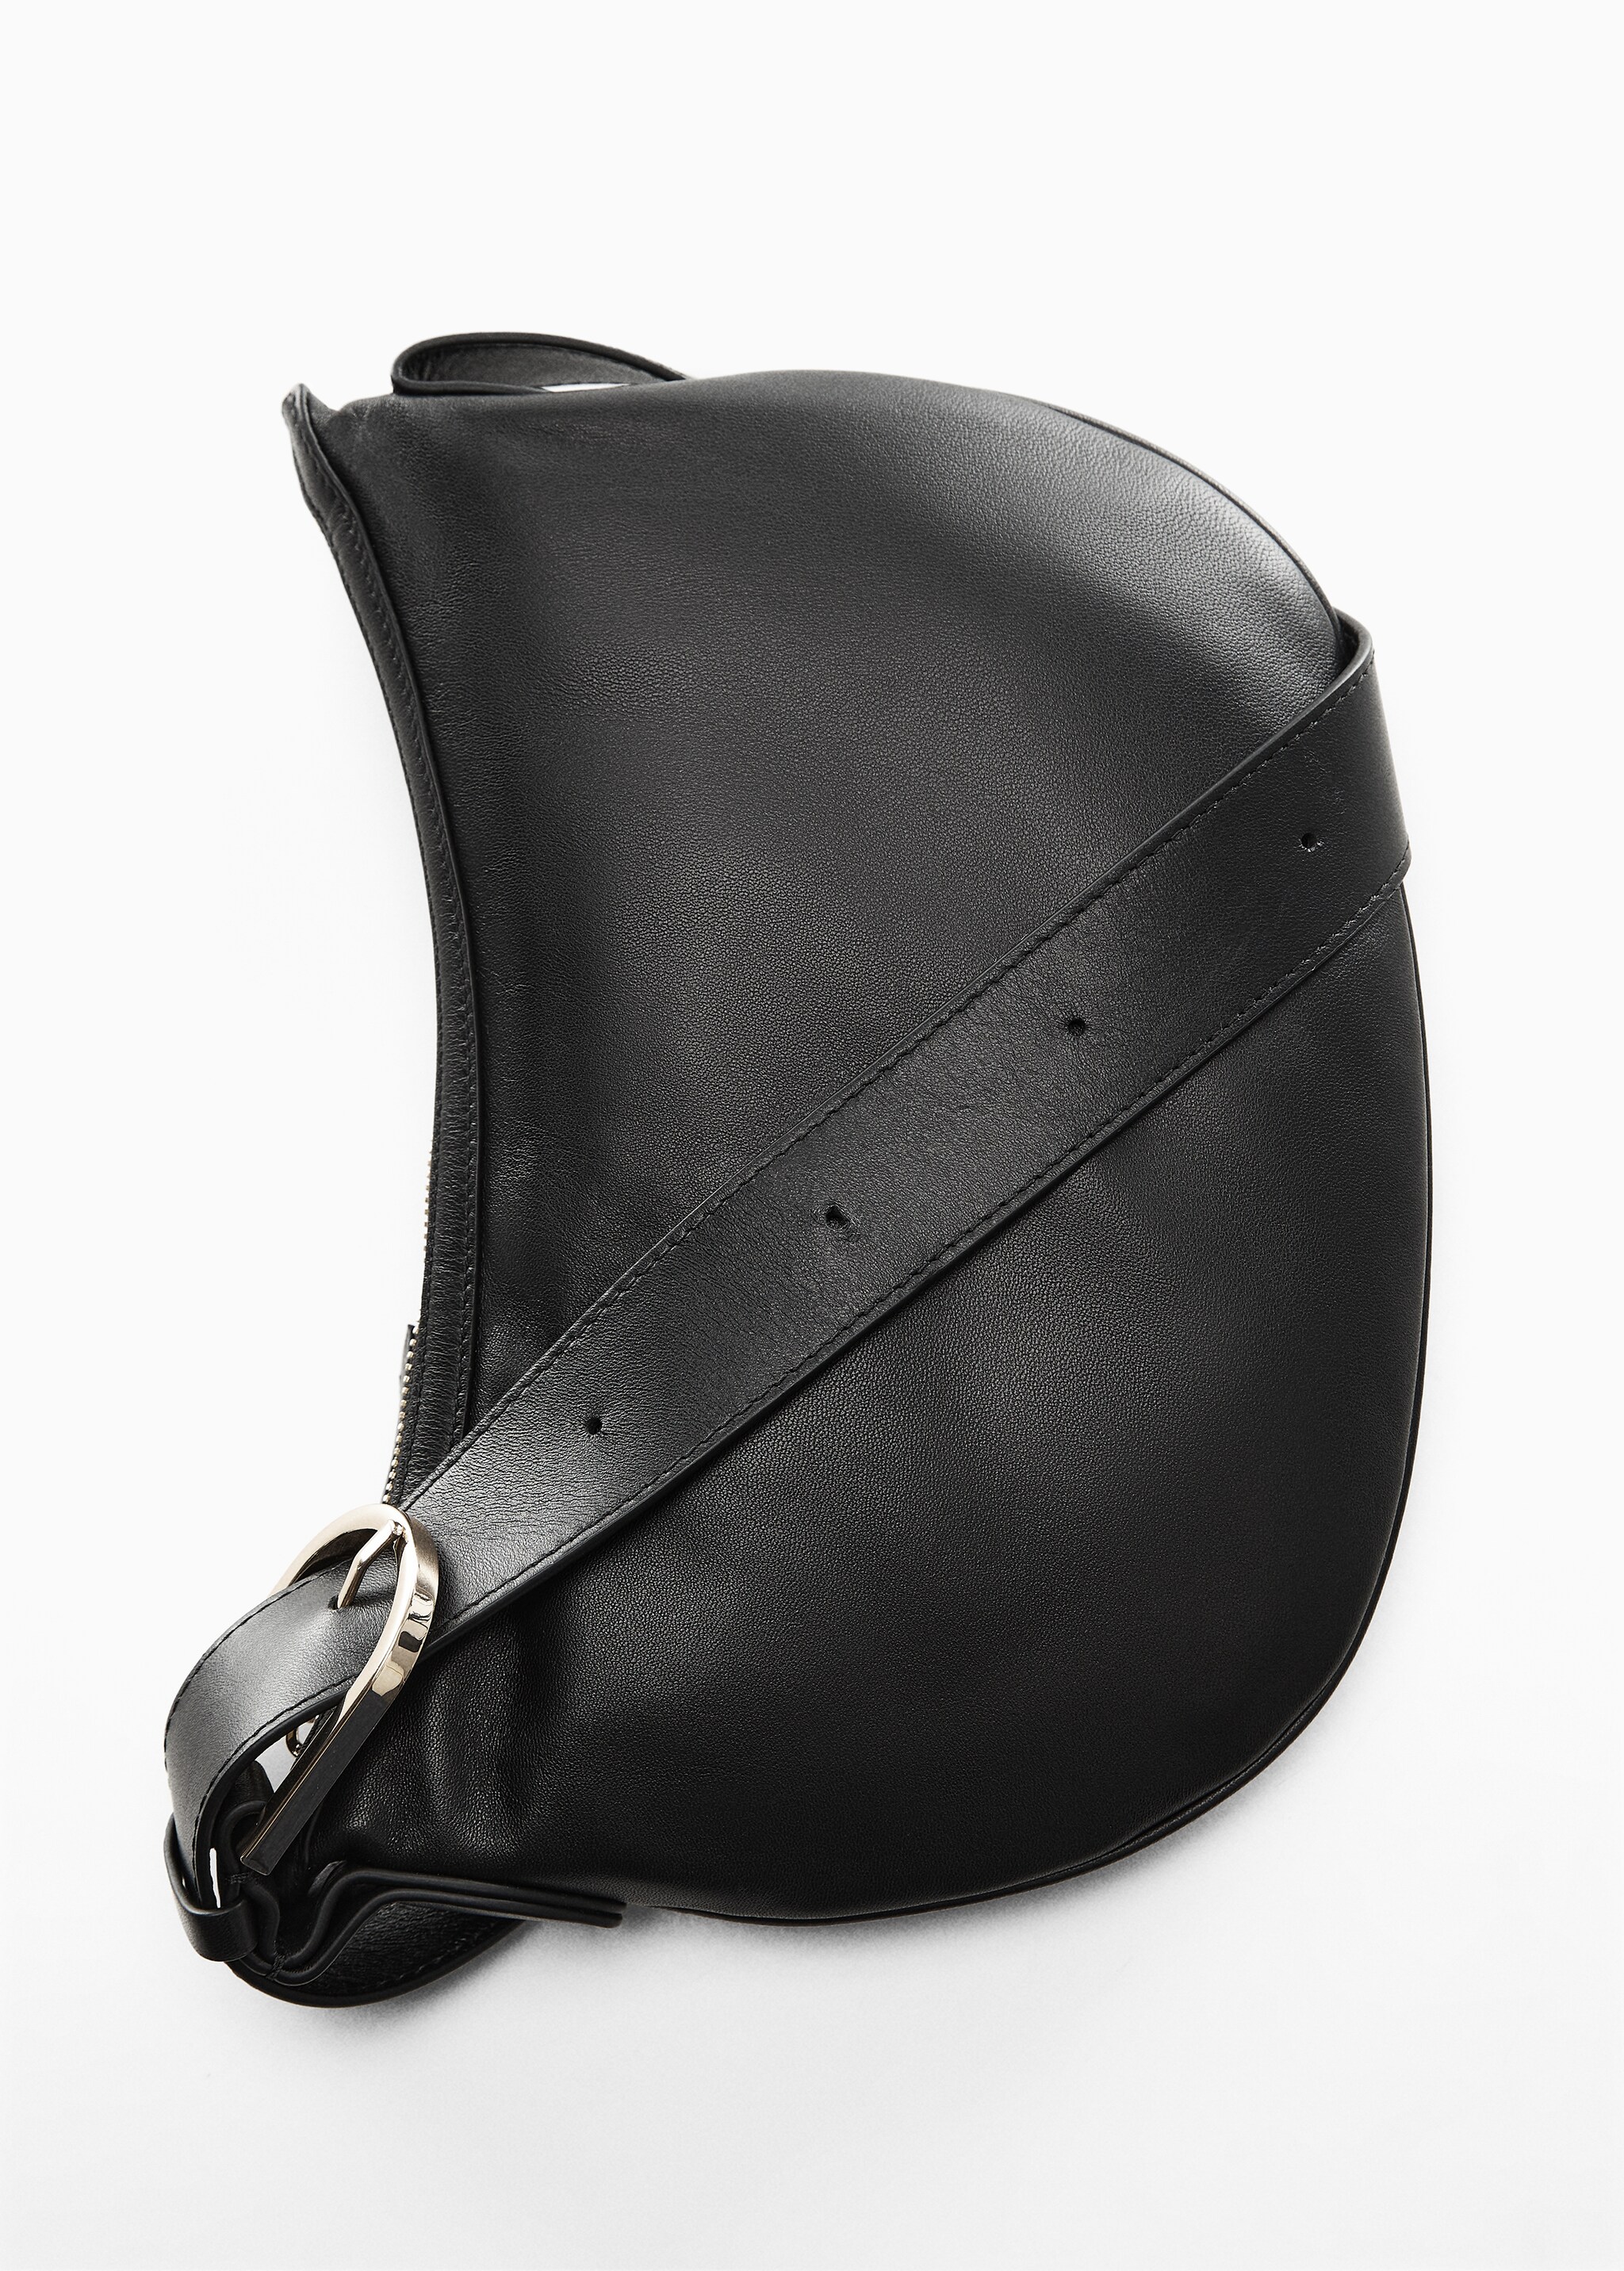 Leather shoulder bag - Details of the article 5